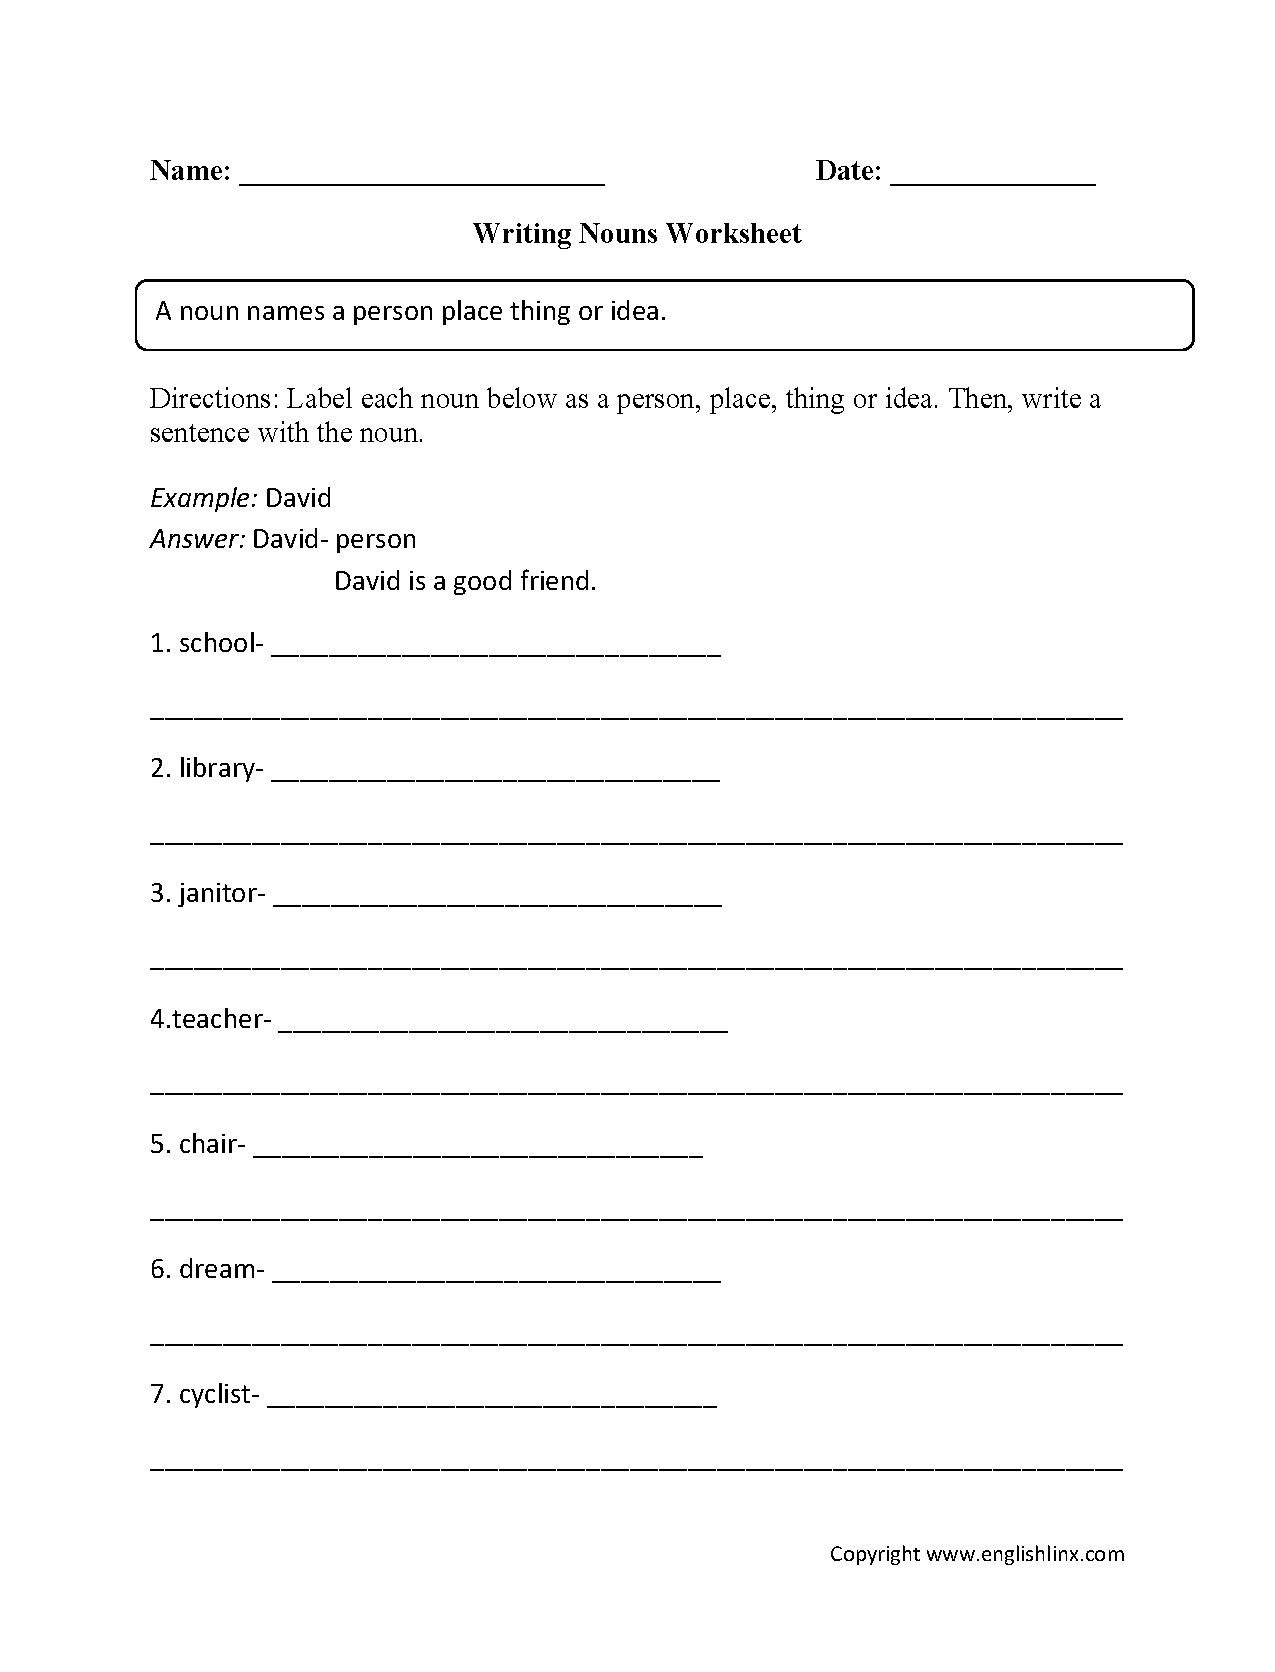 identifying-nouns-worksheet-2nd-grade